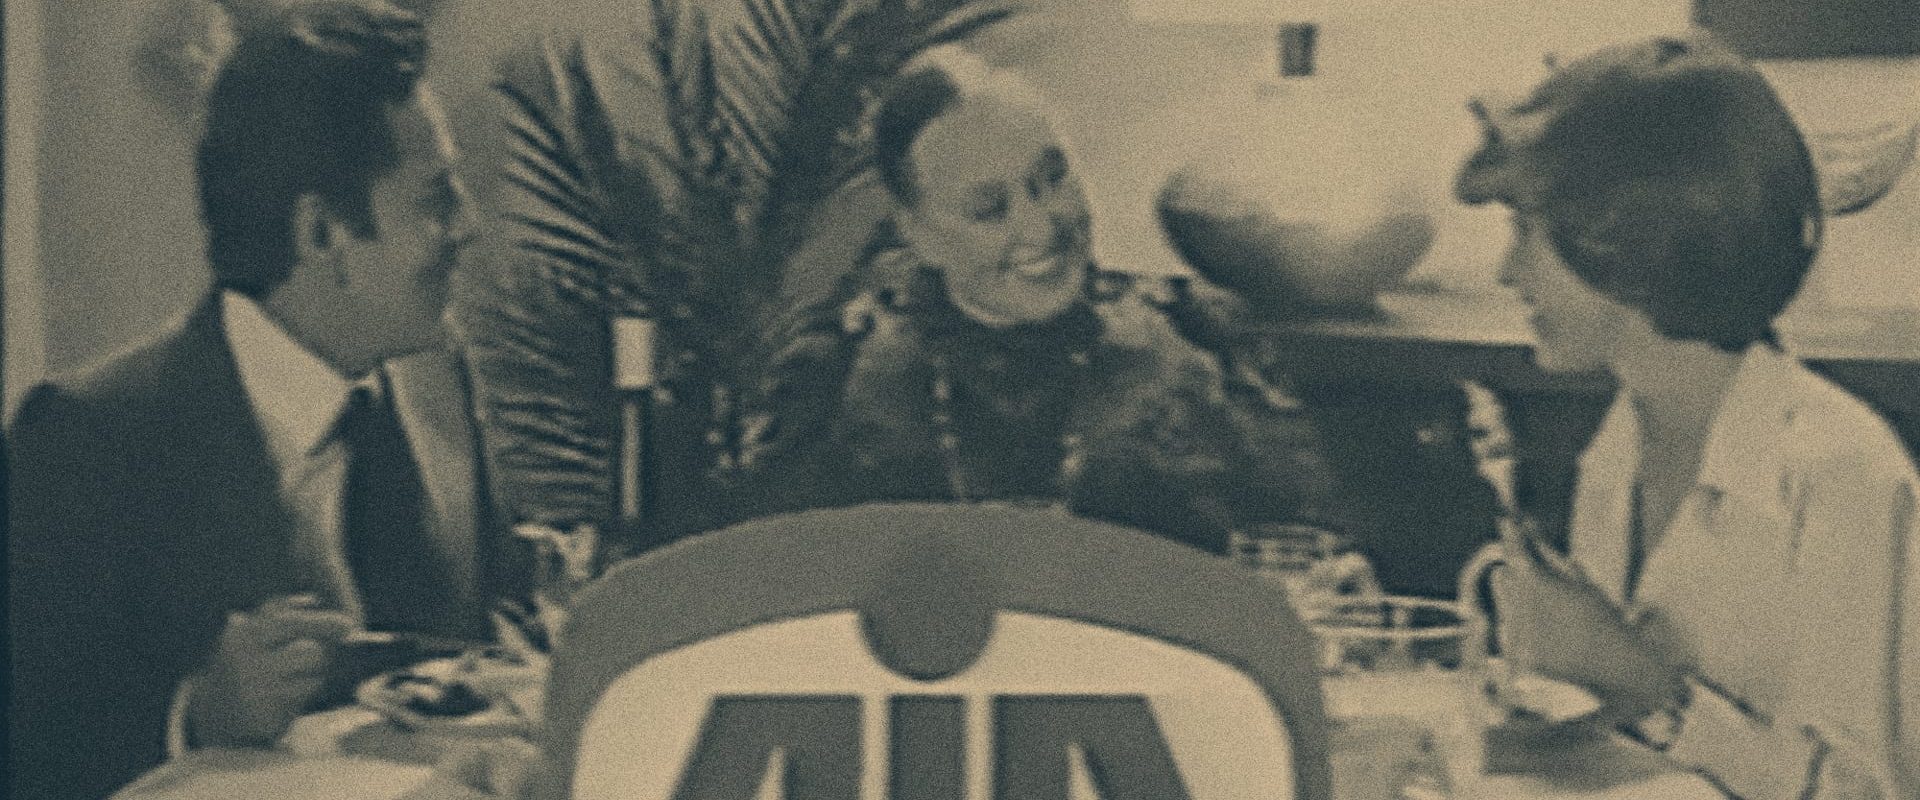 Frame dello spot pubblicitario del 1979 di AIA, Agricola Italiana Alimentare, con protagonista Ave Ninchi